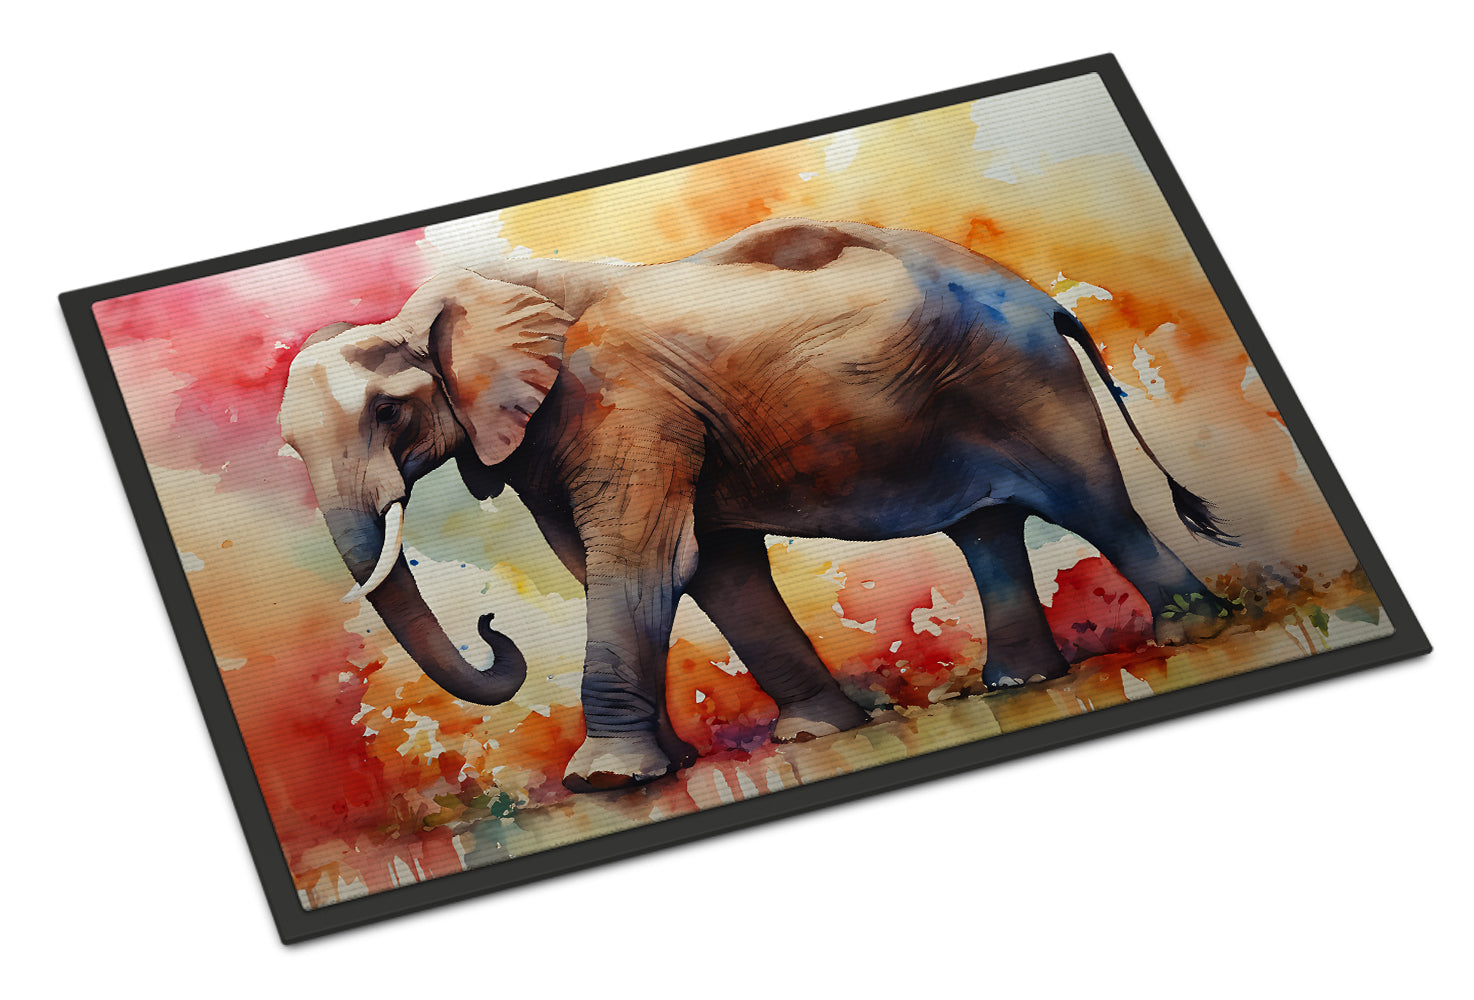 Buy this Elephant Doormat